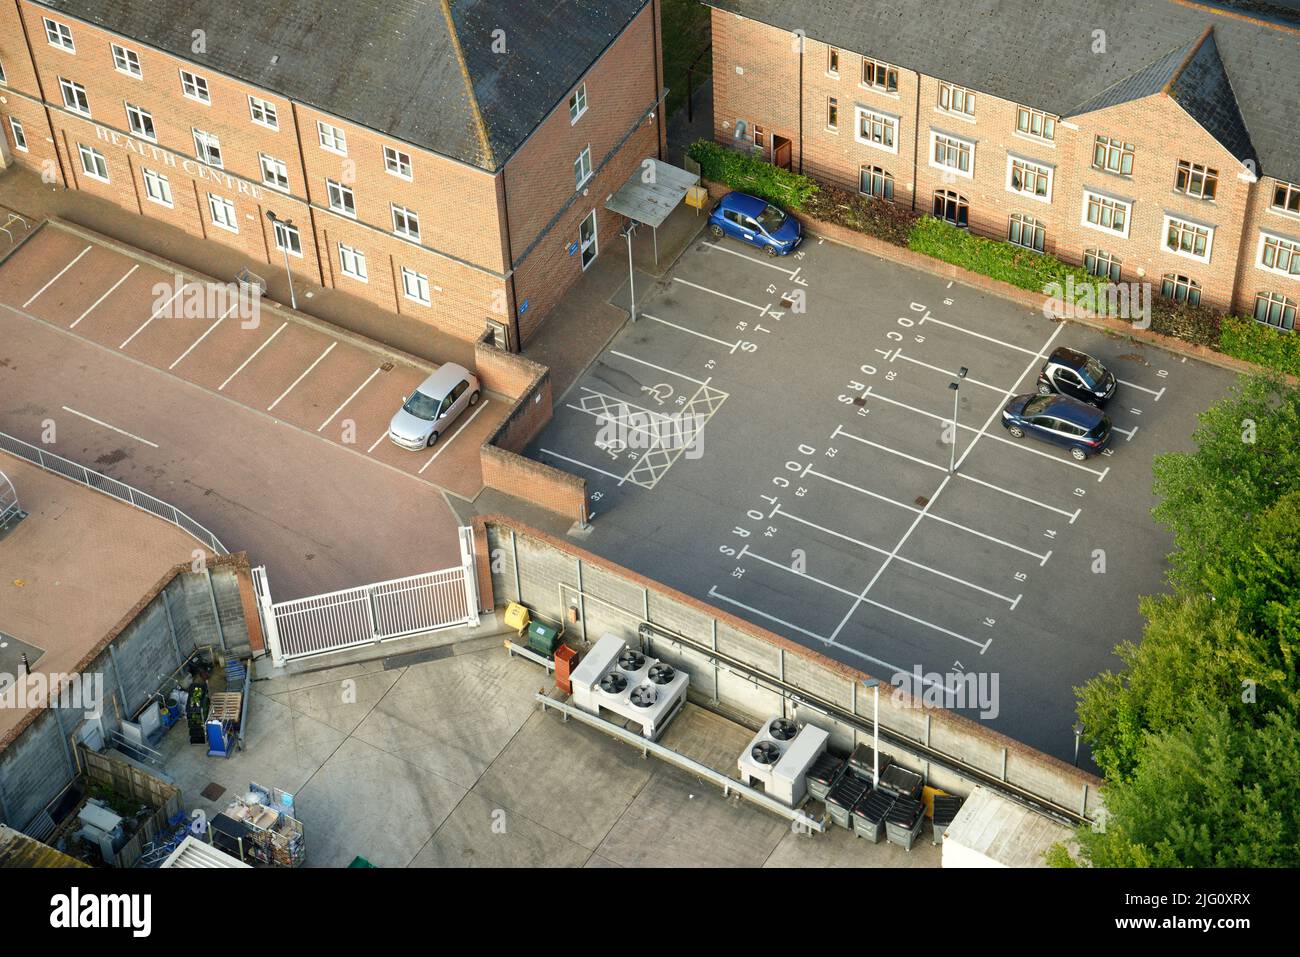 Un centre de santé anglais avec un parking presque vide. Seulement quelques voitures garées. Banque D'Images